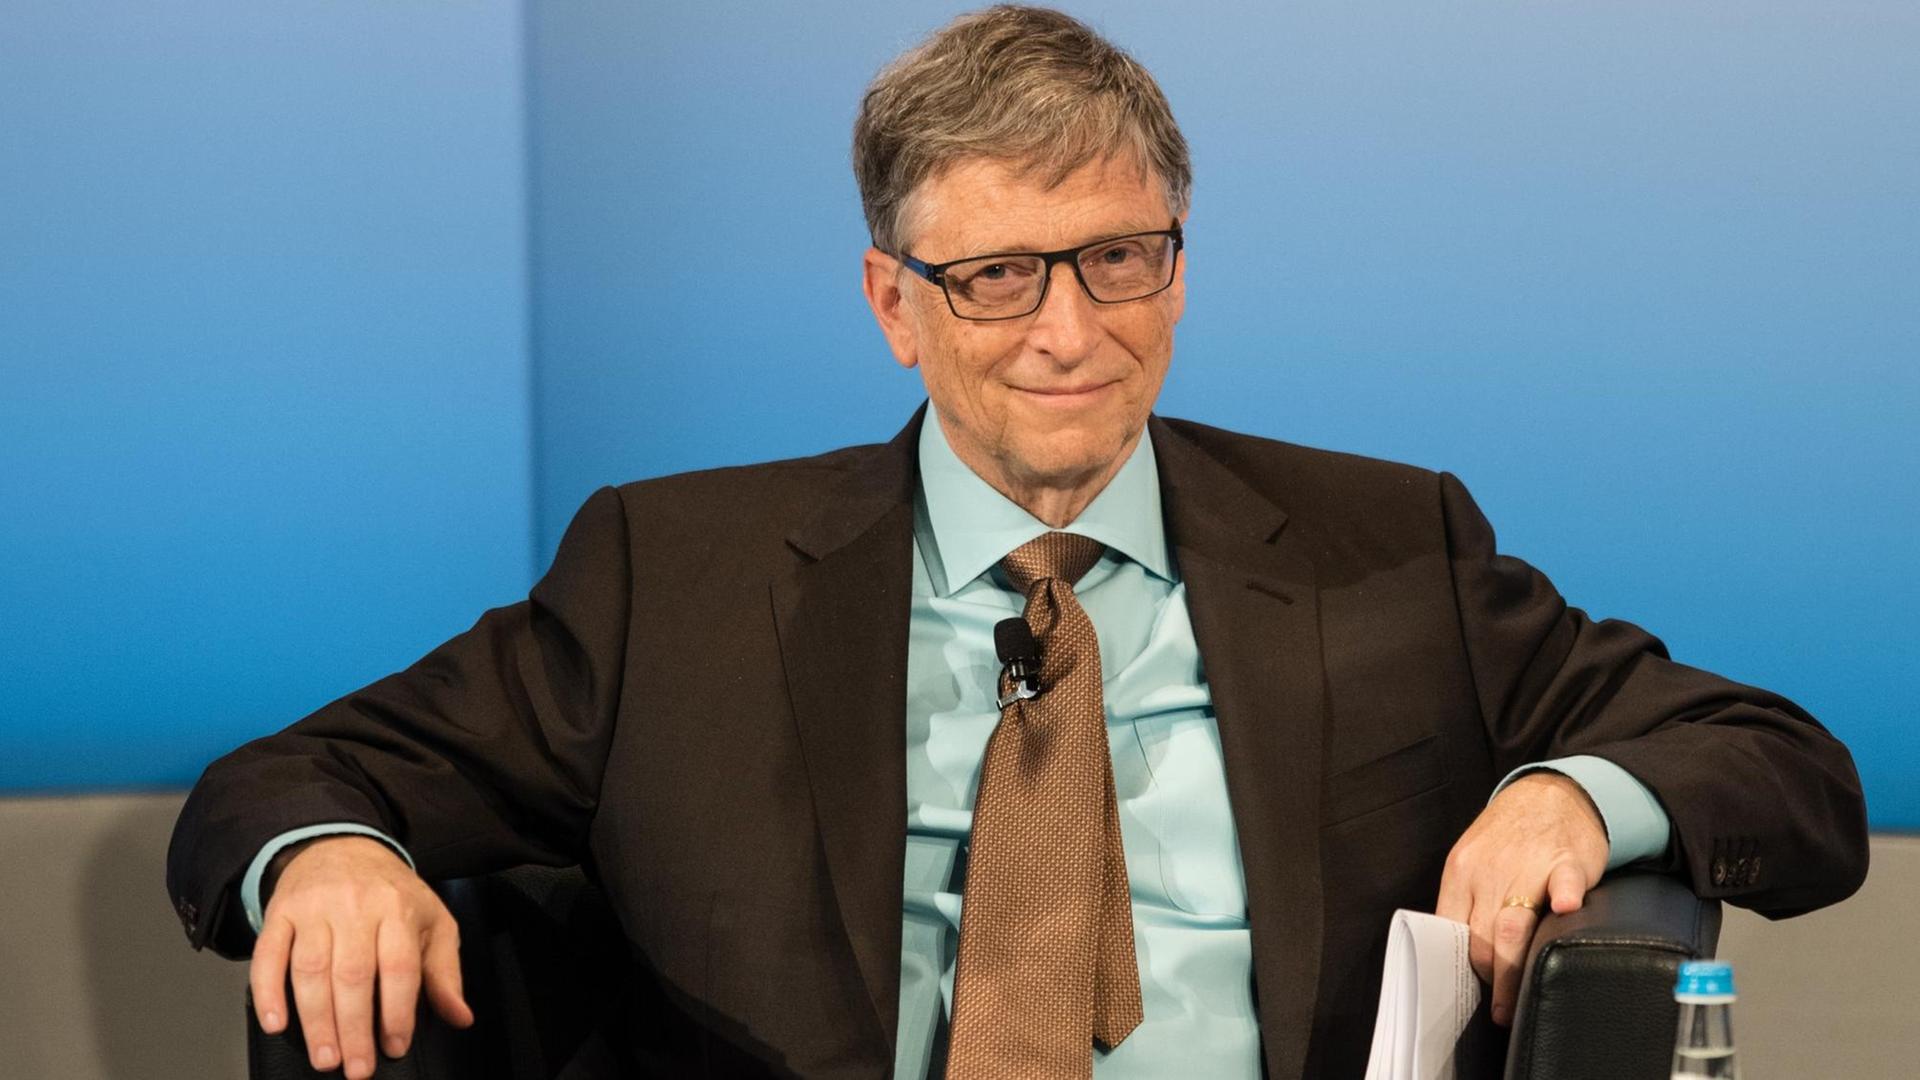 Microsoft-Gründer Bill Gates während der Münchner Sicherheitskonferenz.